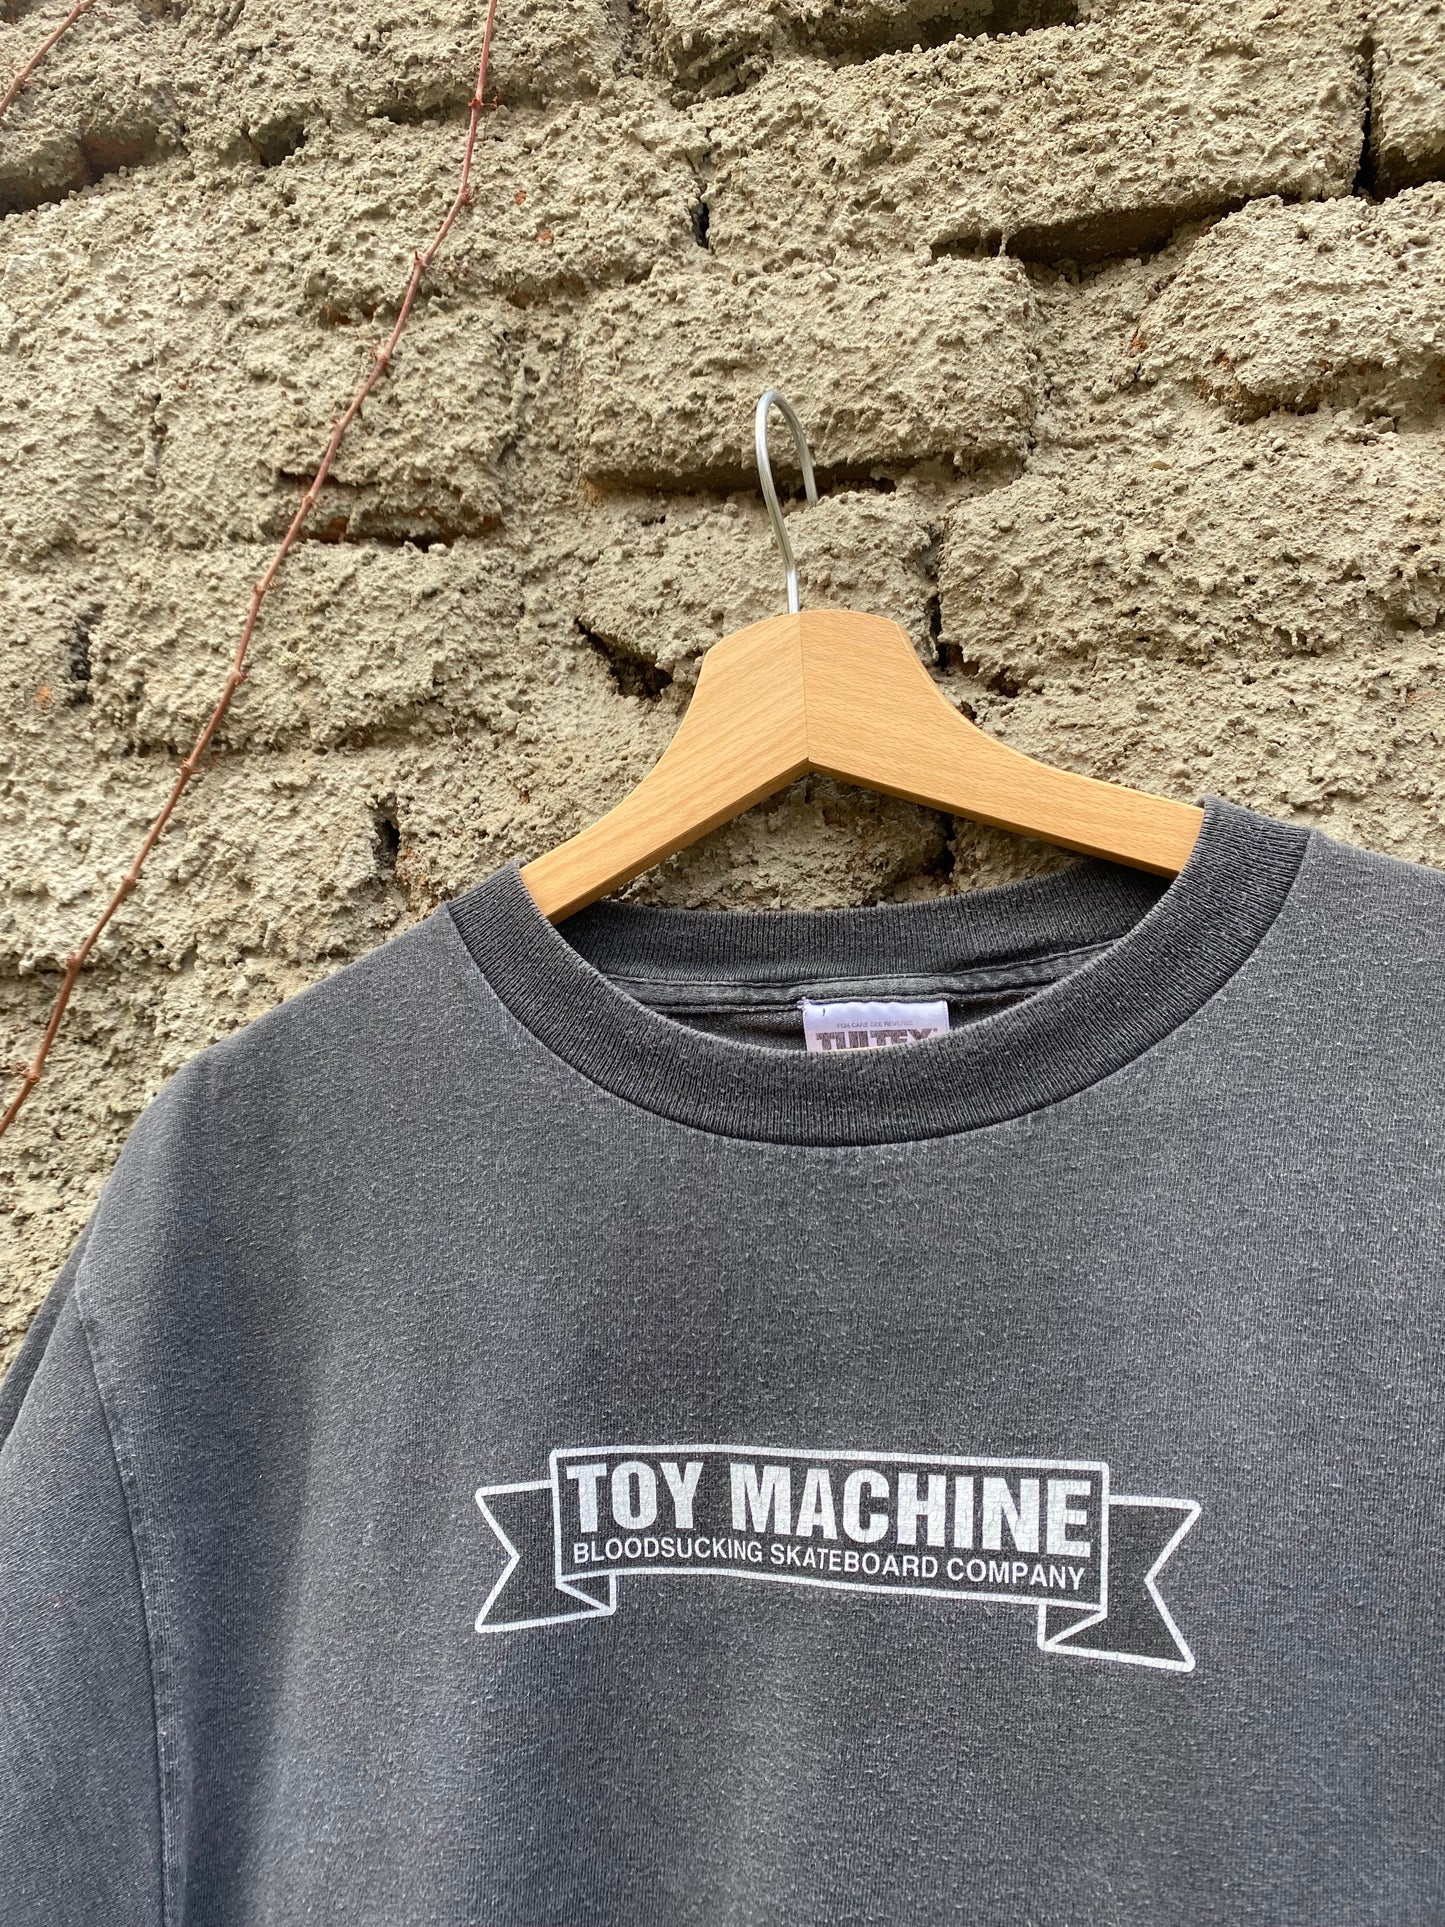 Vintage Toy Machine 90s t-shirt - size L